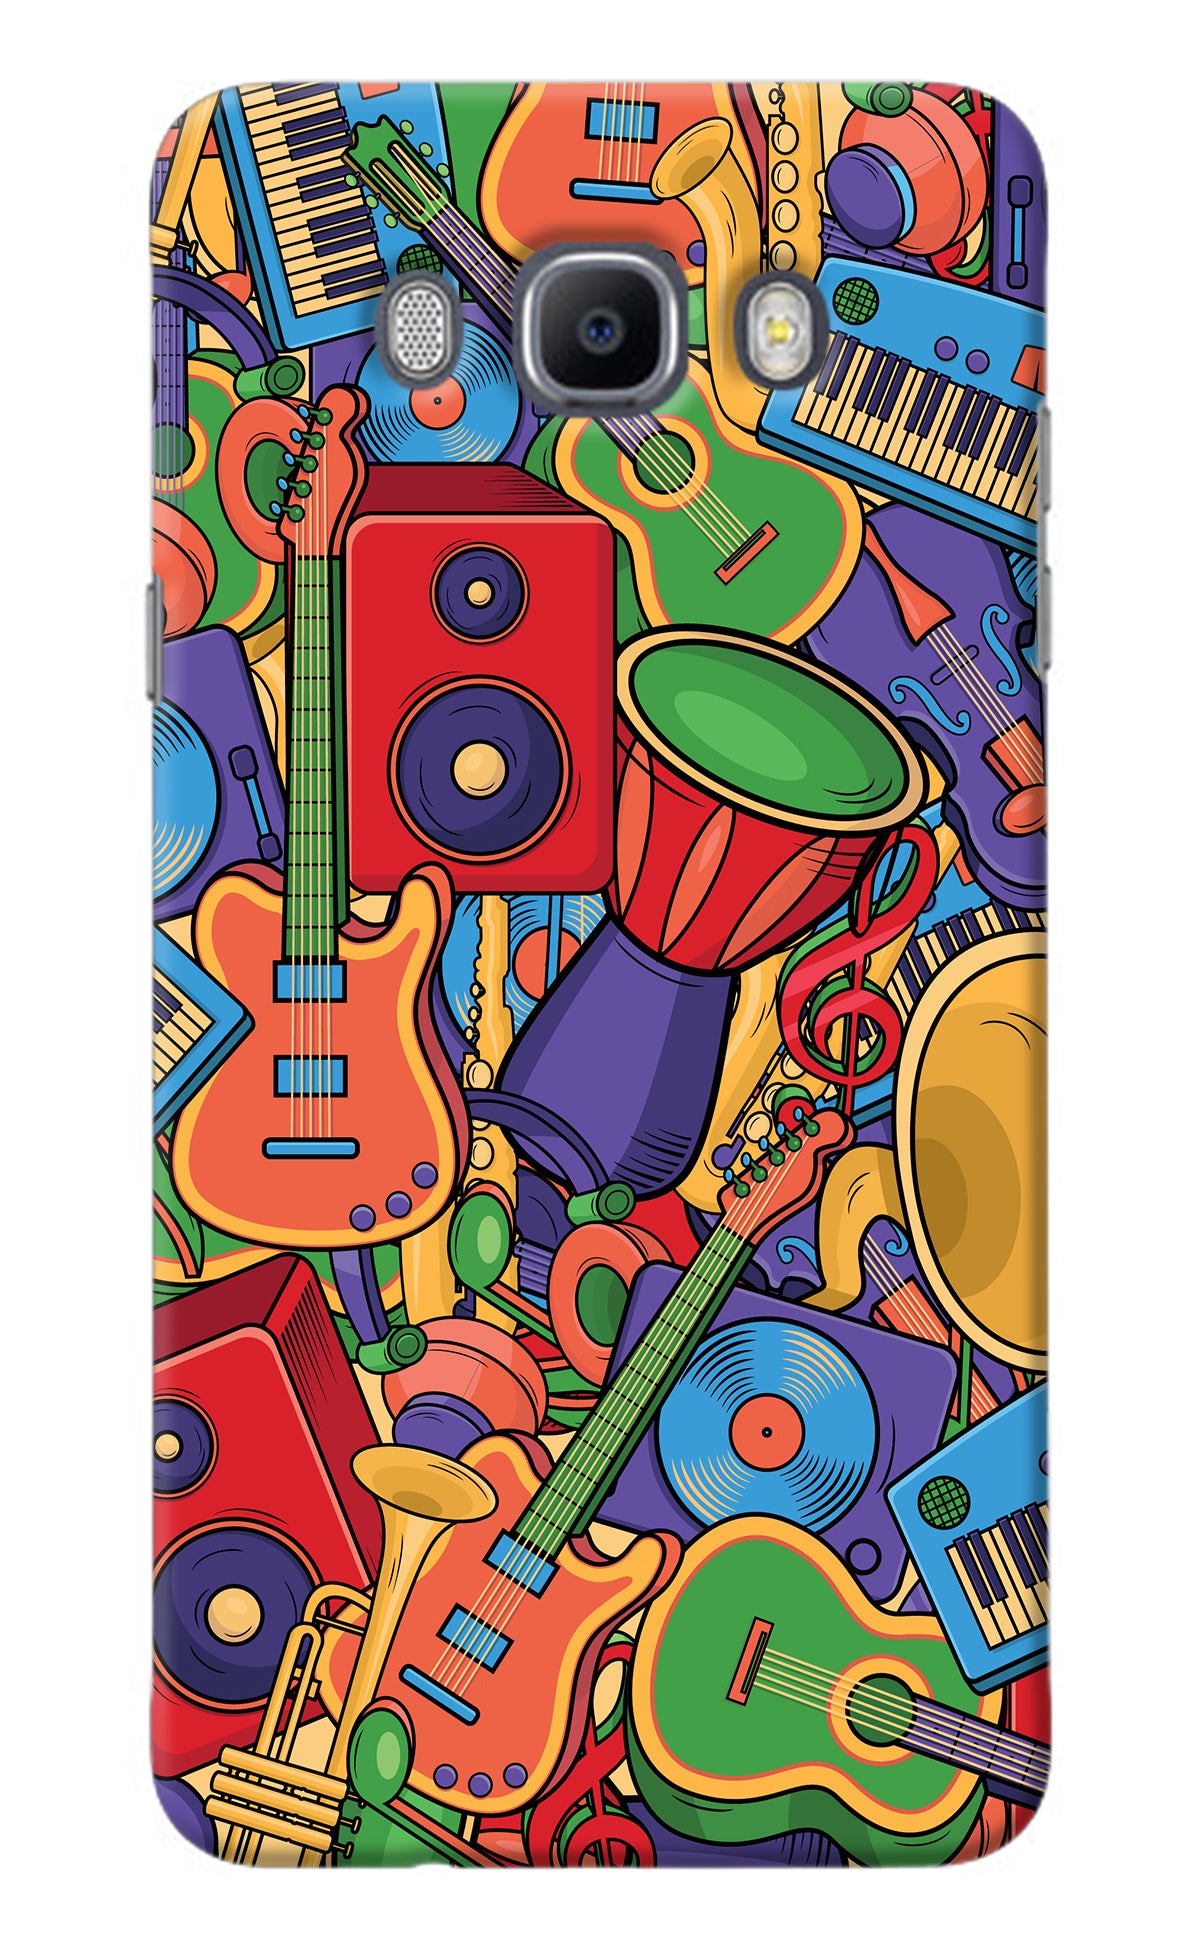 Music Instrument Doodle Samsung J7 2016 Back Cover